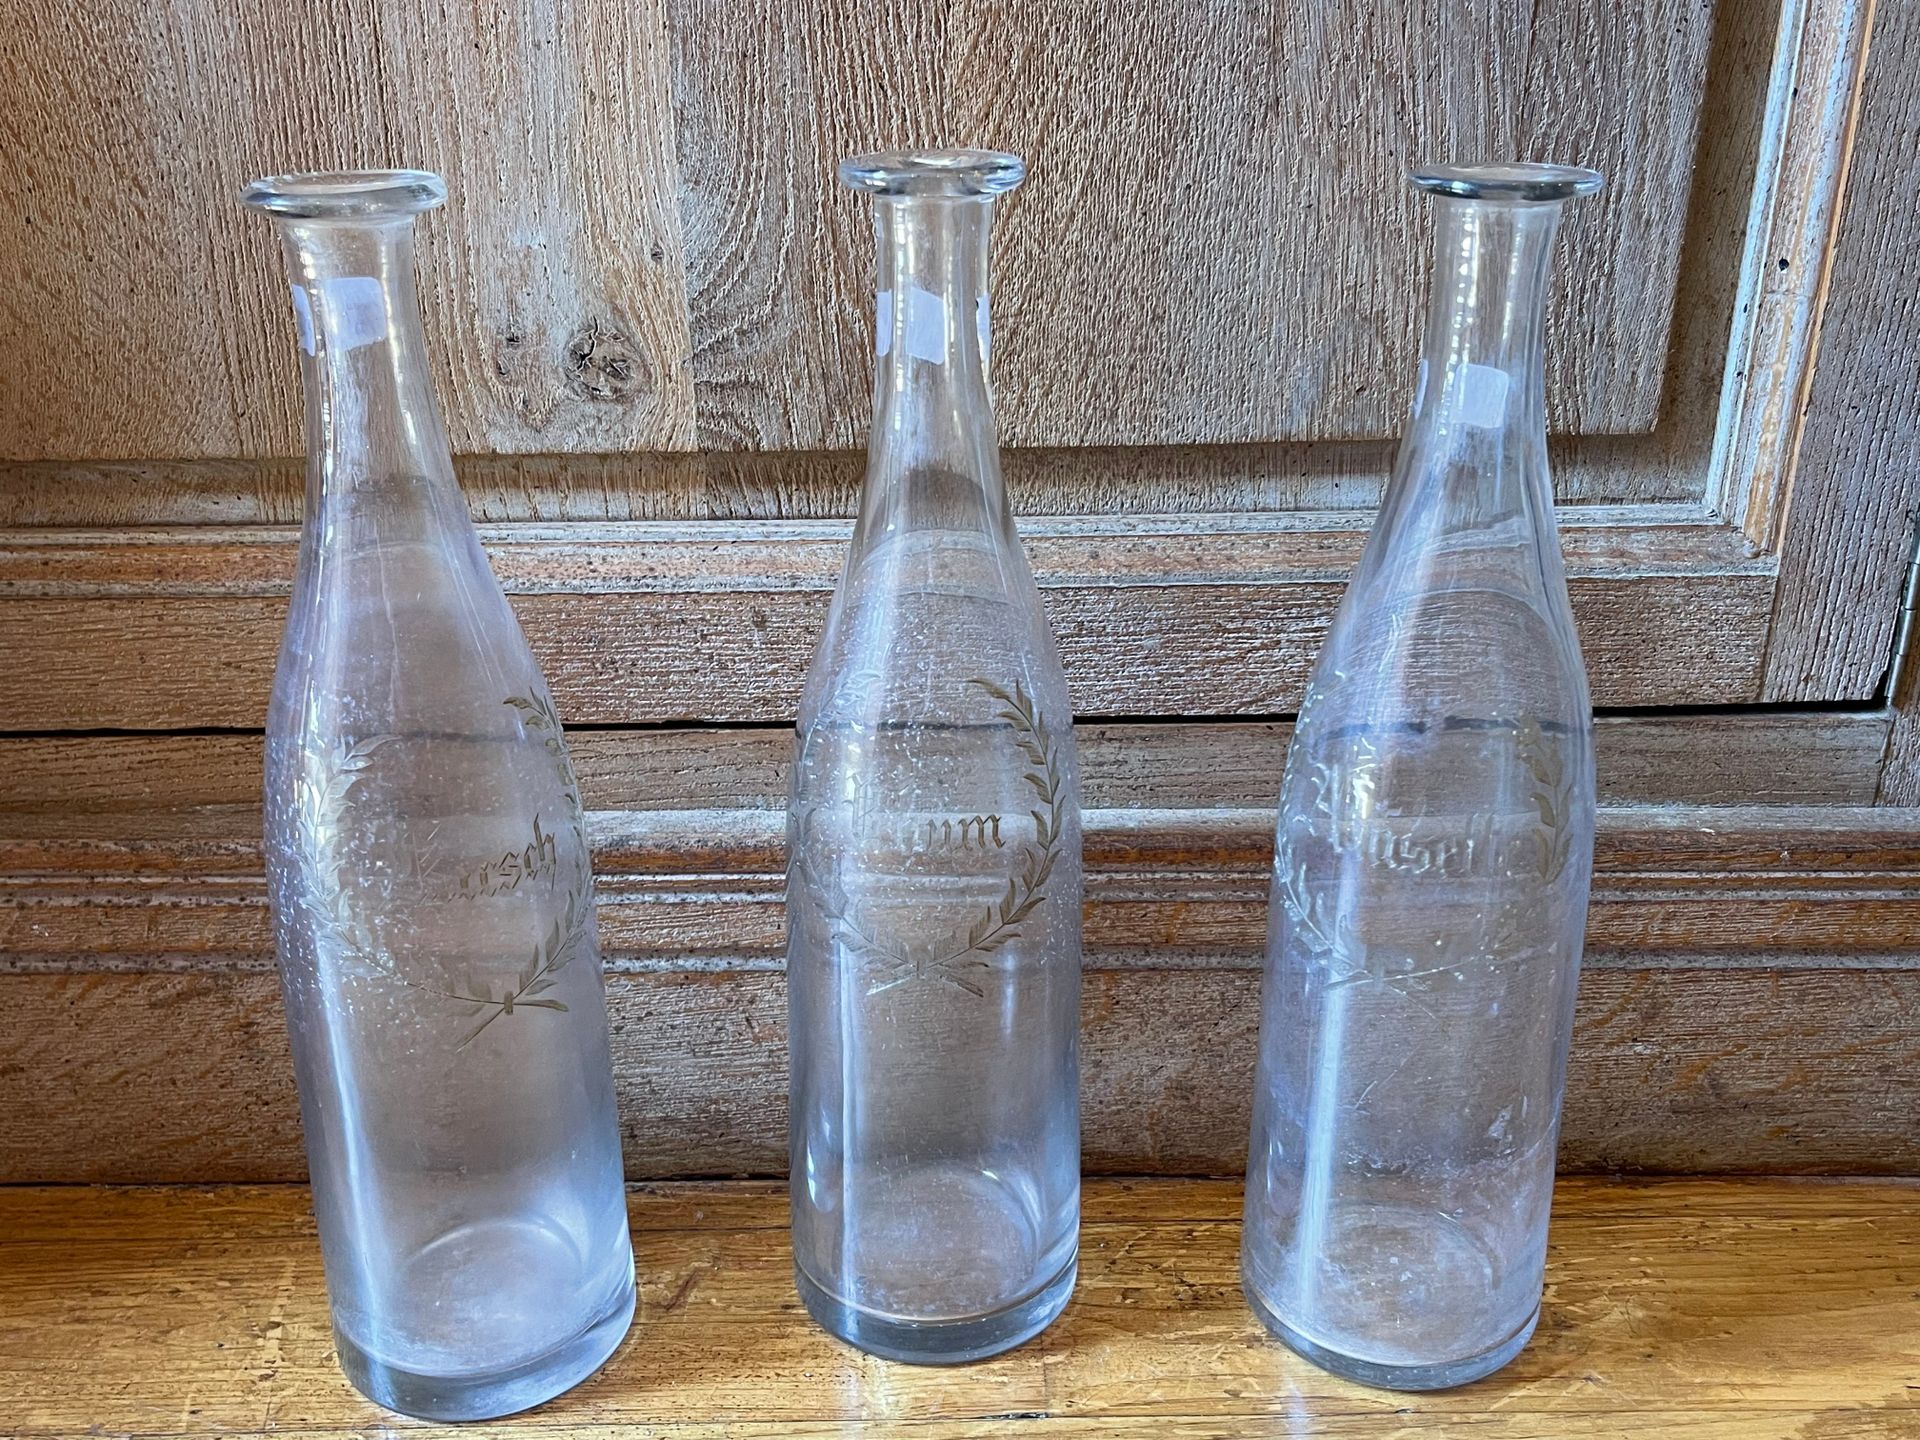 Null Tre bottiglie di vetro incise "Rhum, Anisette, Kirsh